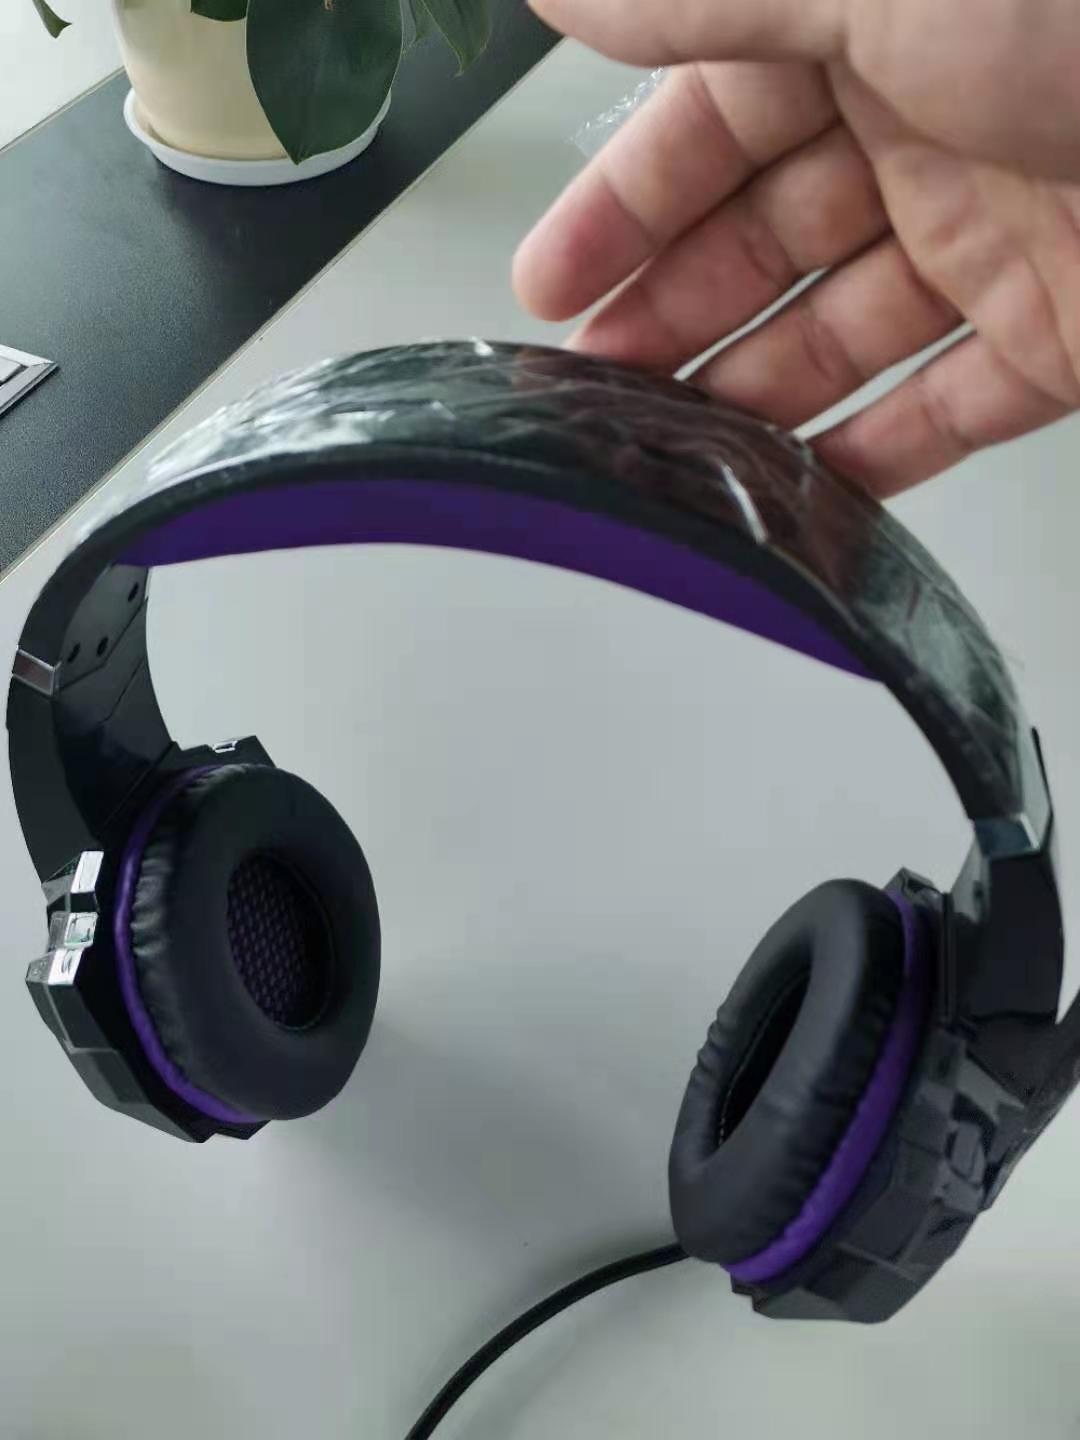 Kopfhörer sind eigentlich kabelgebundene Gaming-Headsets